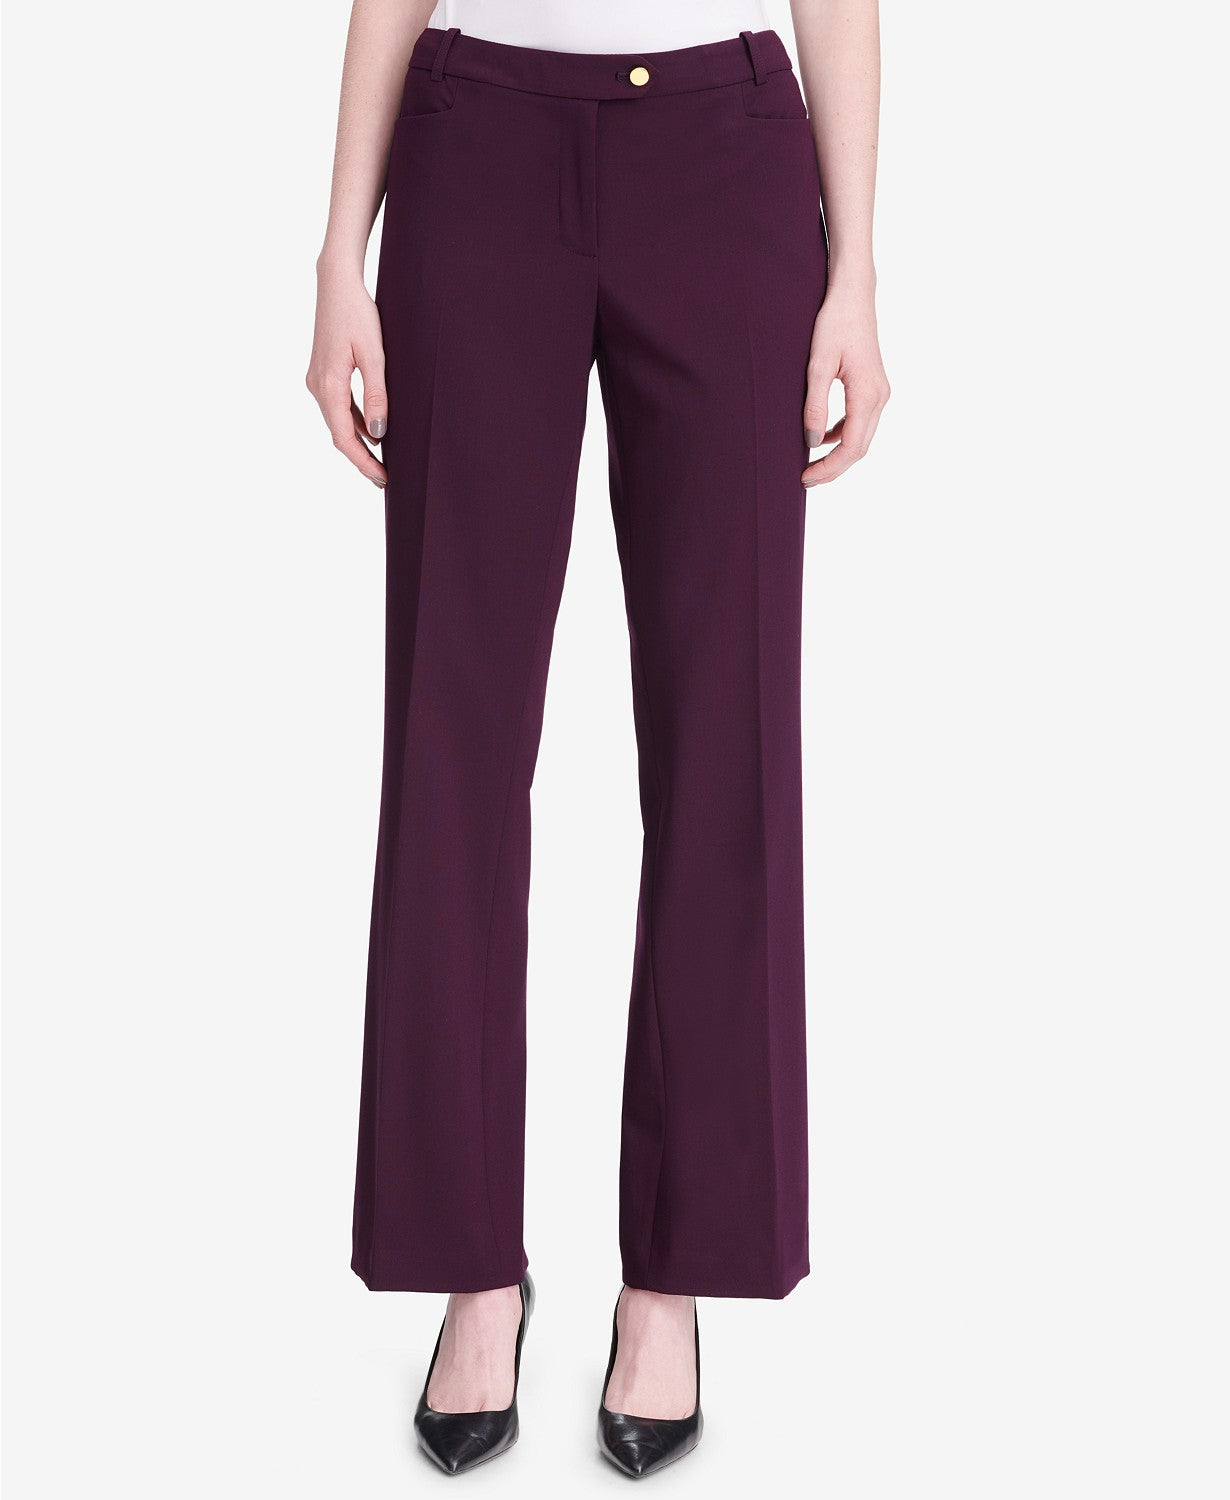 Calvin Klein Women's Modern Fit Trousers Purple Size 8